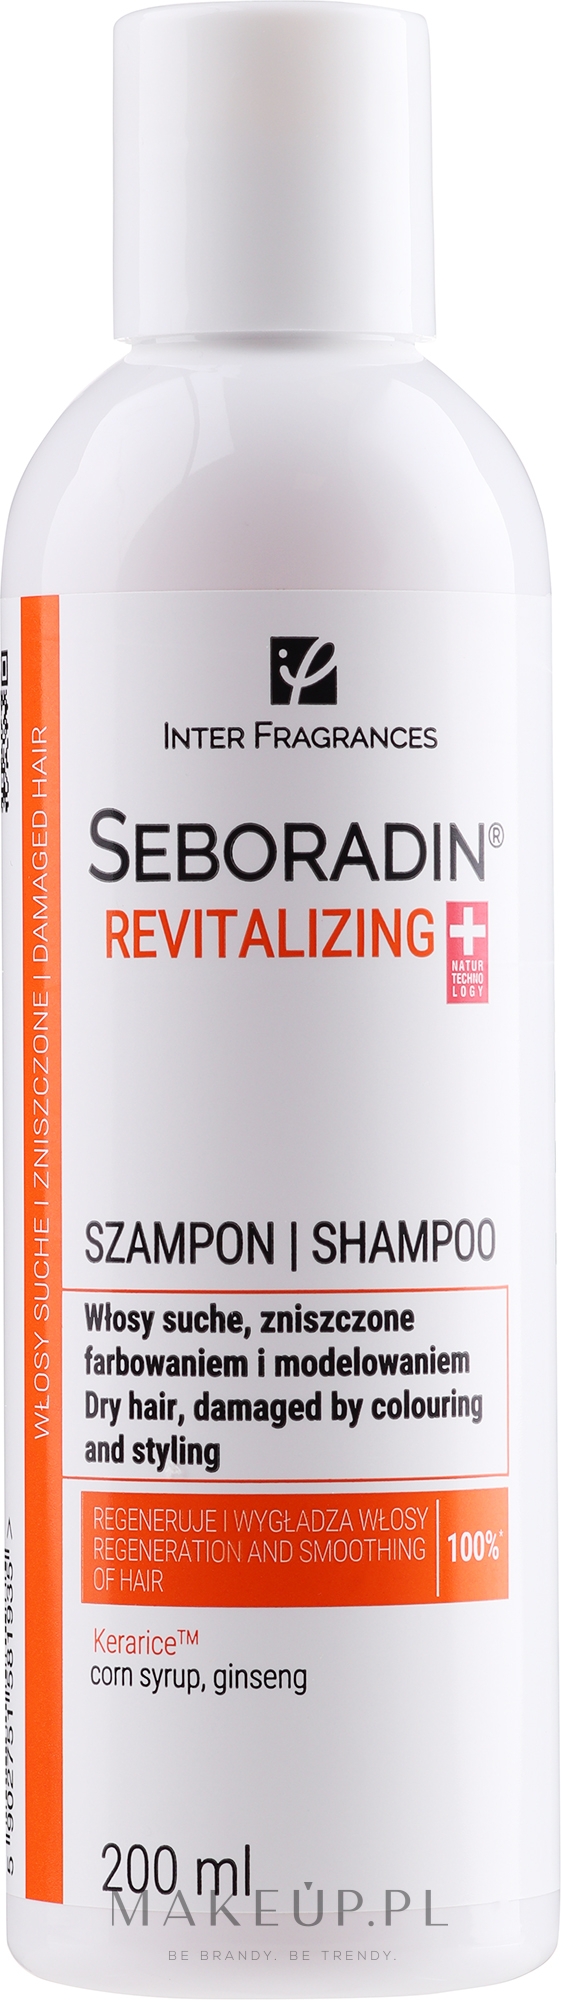 seboradin szampon regenerujący wizaz